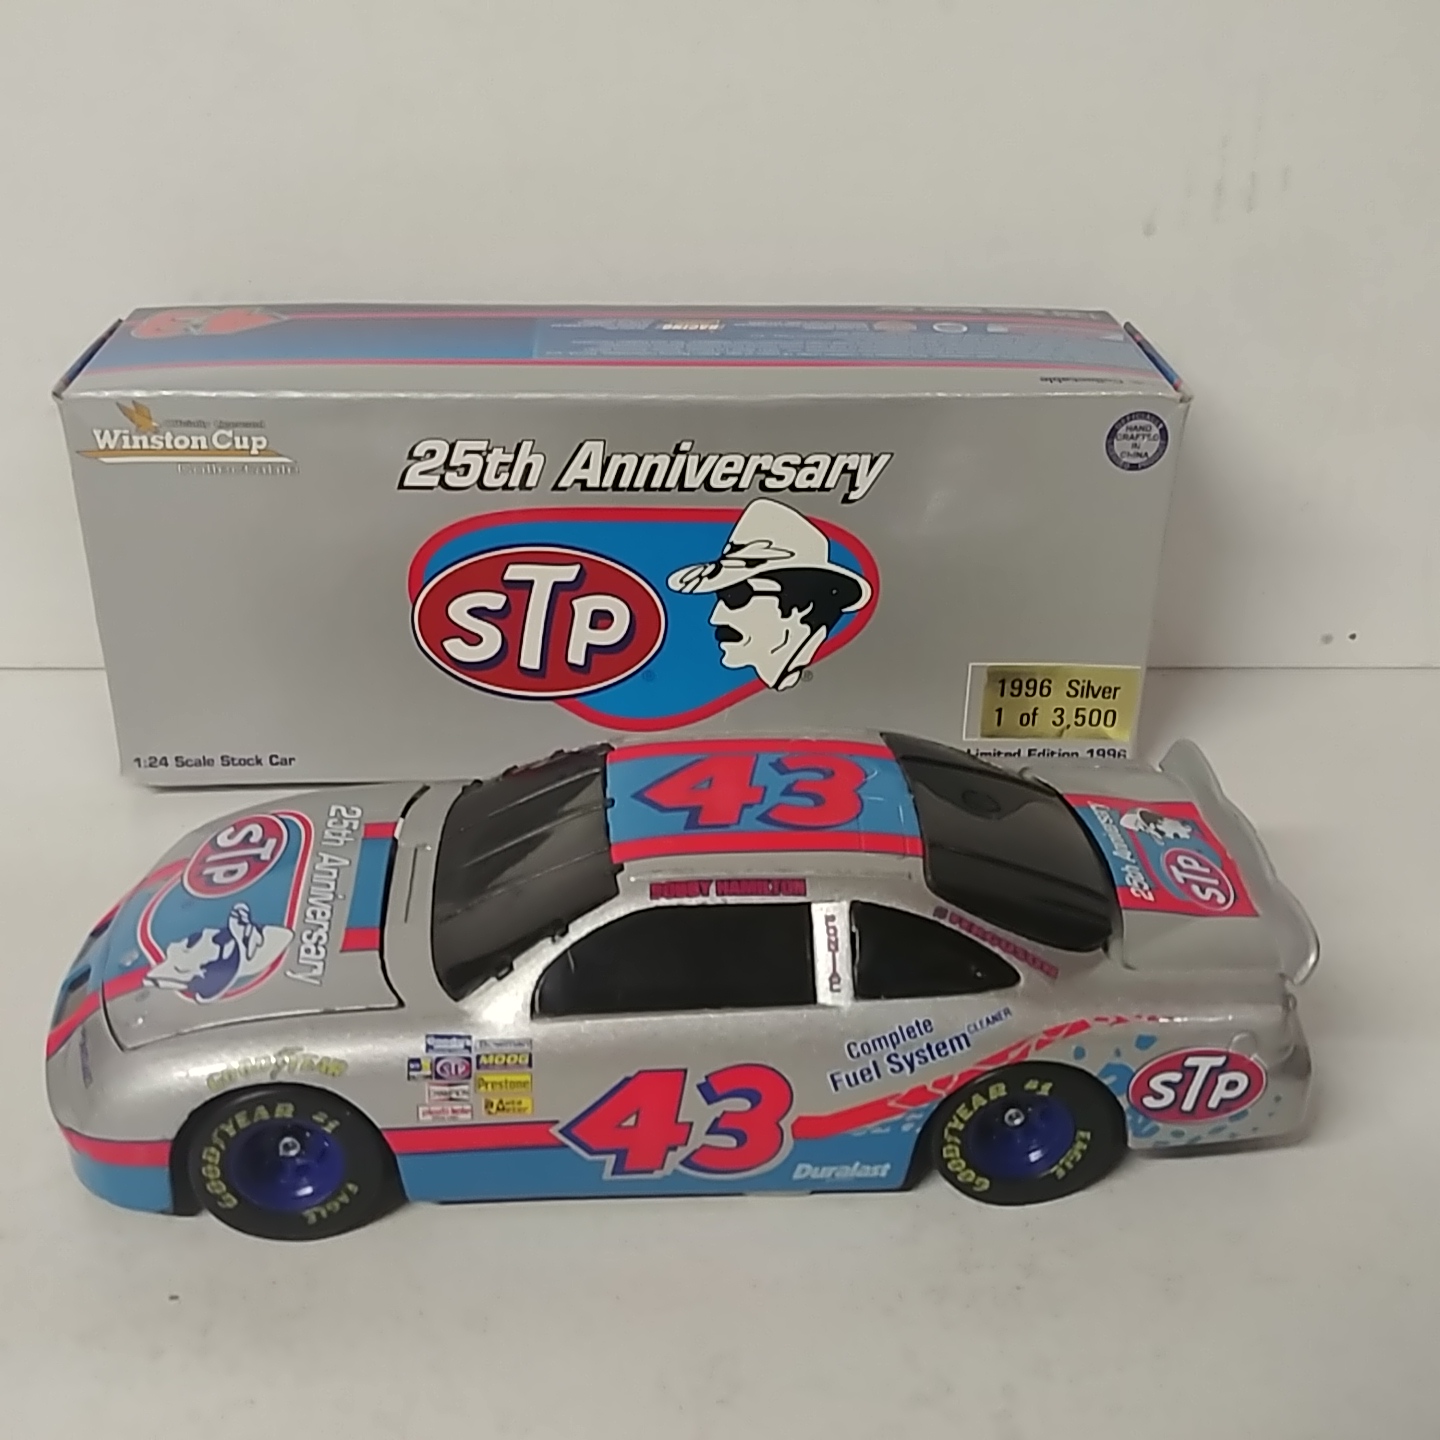 1996 Bobby Hamilton 1/24th STP "Petty 1996 Silver" b/w car